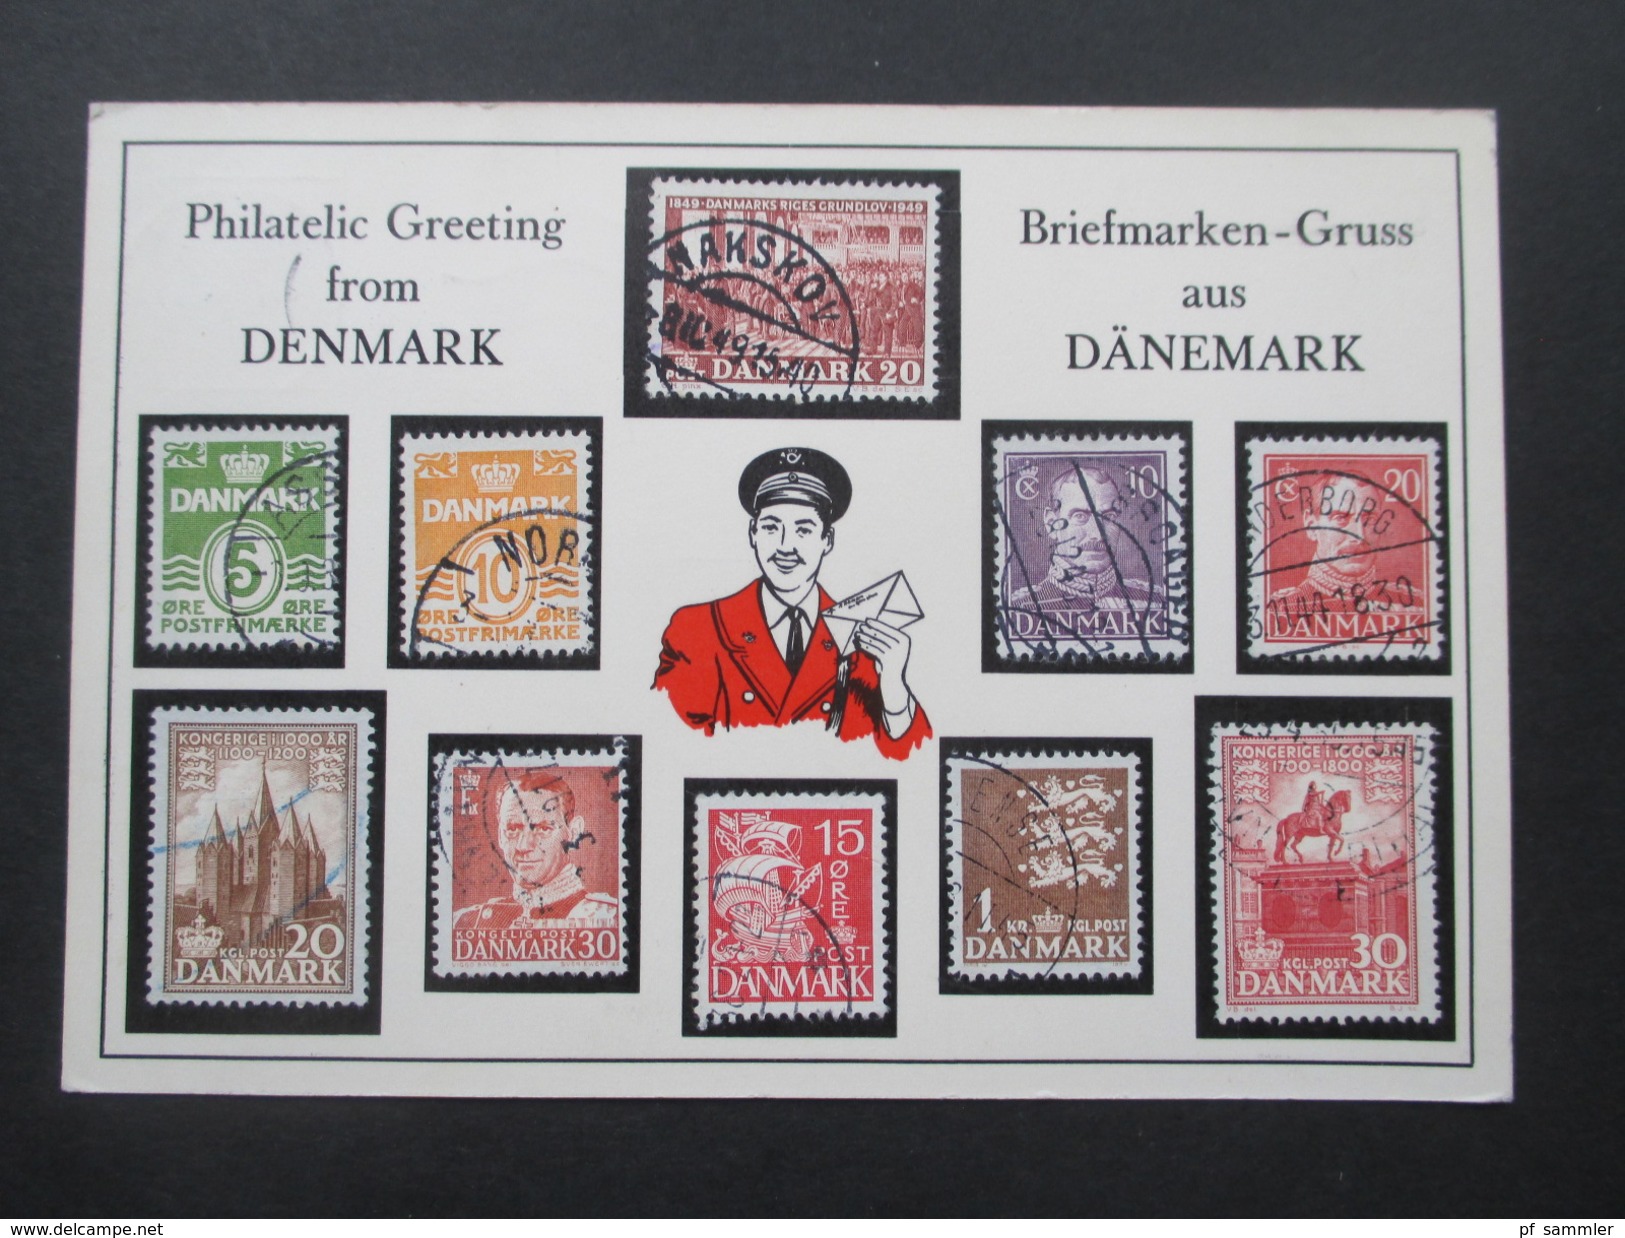 AK 1961 Briefmarken-Gruss Aus Dänemark / Philatelic Greeting From Denmark. Verschiedene Briefmarken Aus Dänemark Aufgekl - Postzegels (afbeeldingen)